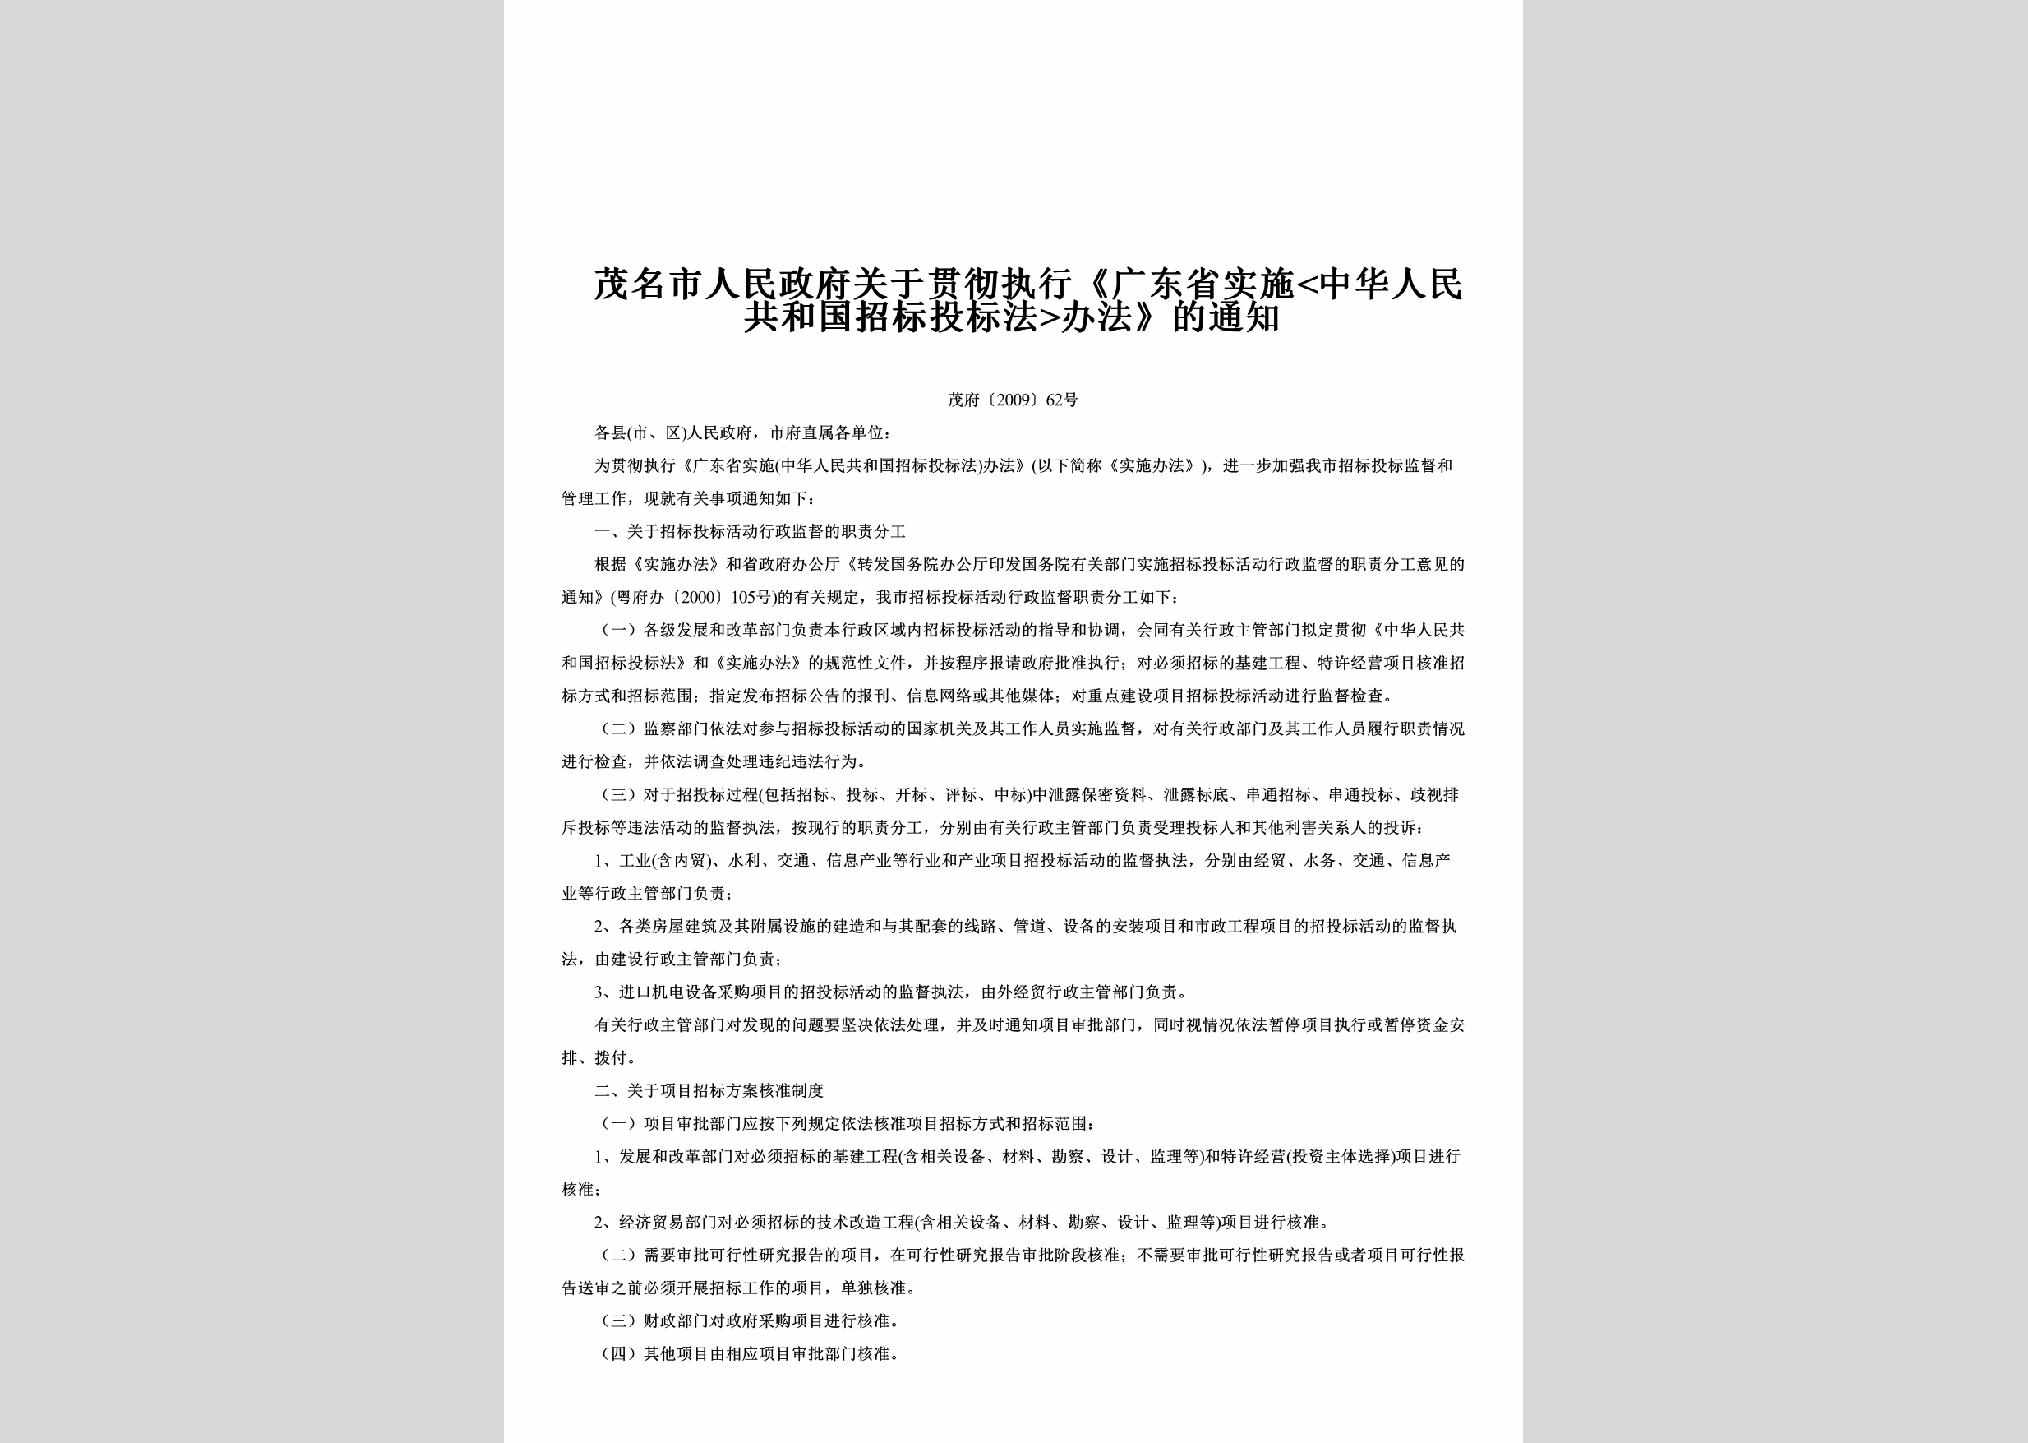 茂府[2009]62号：关于贯彻执行《广东省实施<中华人民共和国招标投标法>办法》的通知